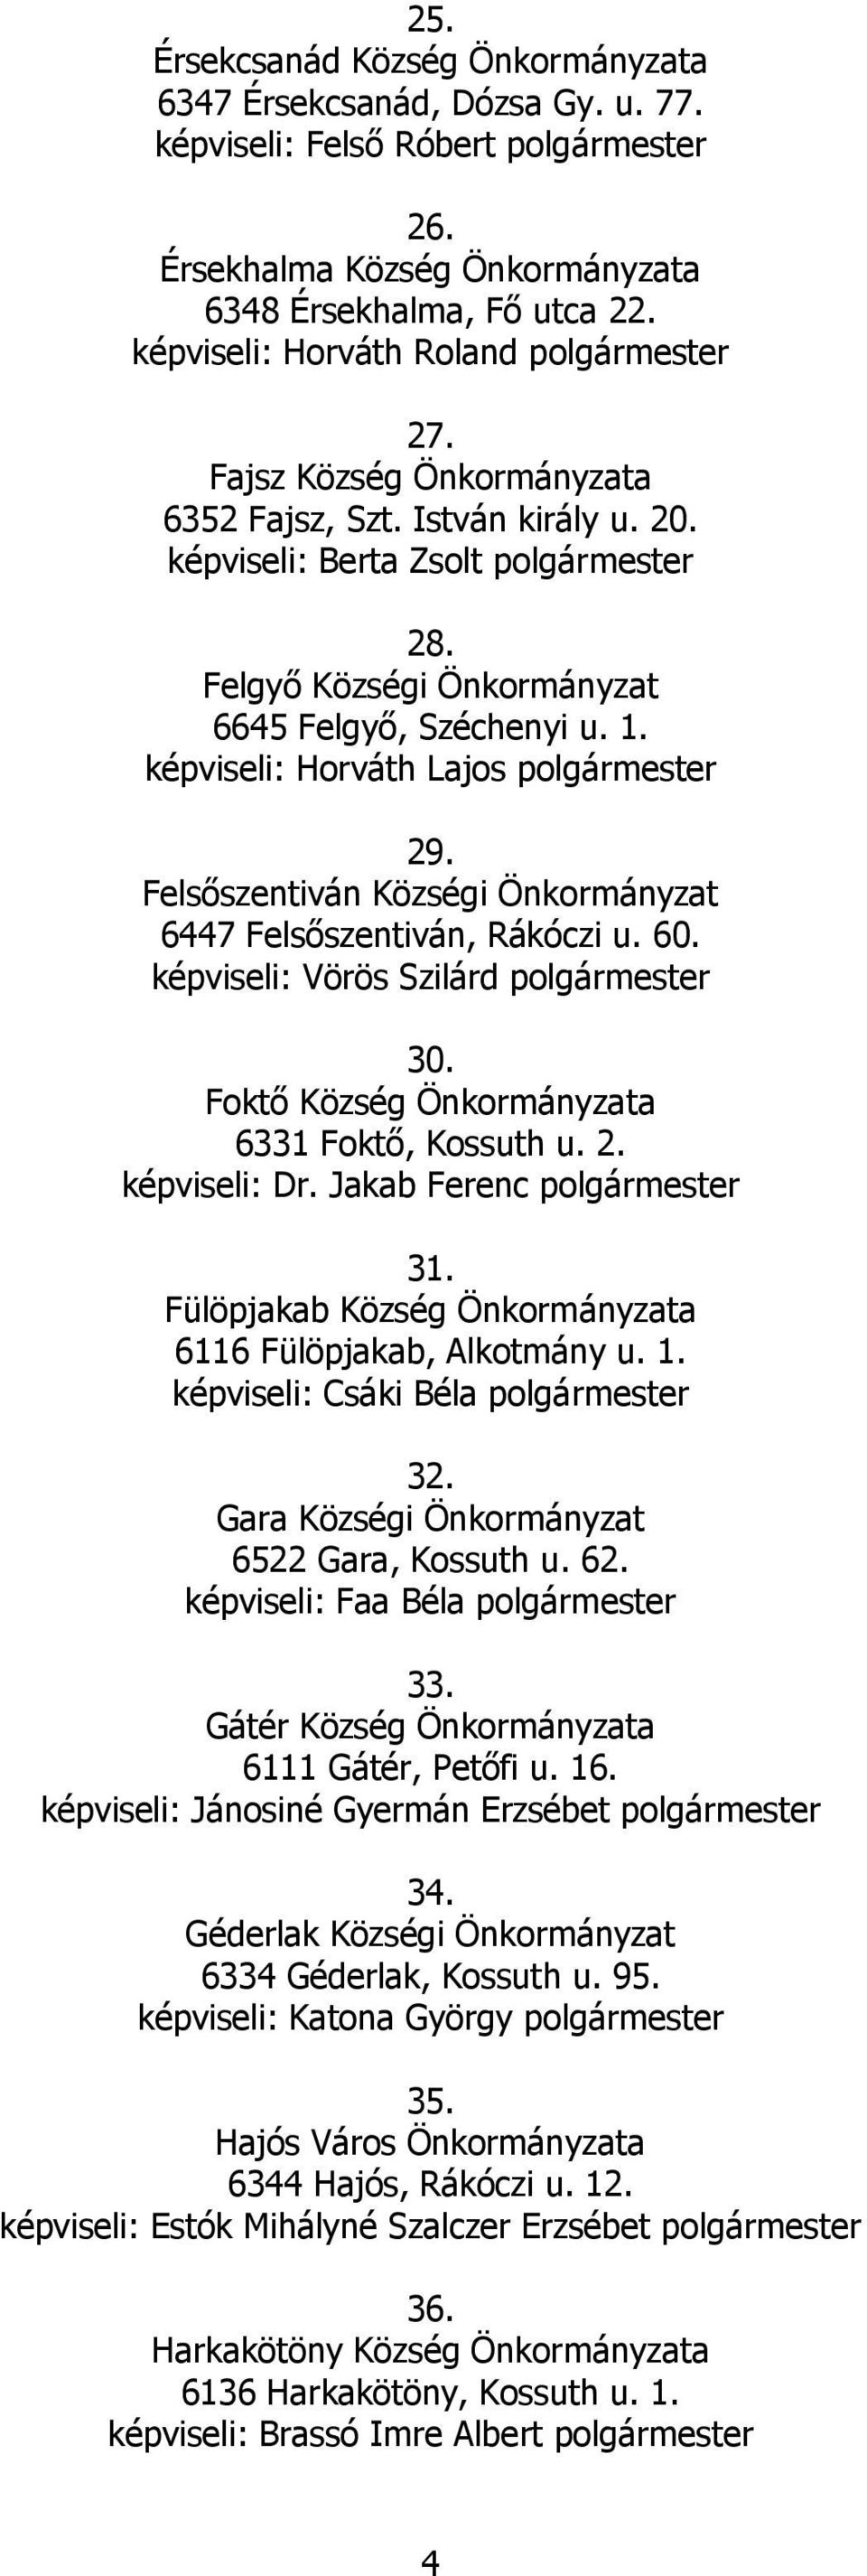 Felsőszentiván Községi Önkormányzat 6447 Felsőszentiván, Rákóczi u. 60. képviseli: Vörös Szilárd polgármester 30. Foktő 6331 Foktő, Kossuth u. 2. képviseli: Dr. Jakab Ferenc polgármester 31.